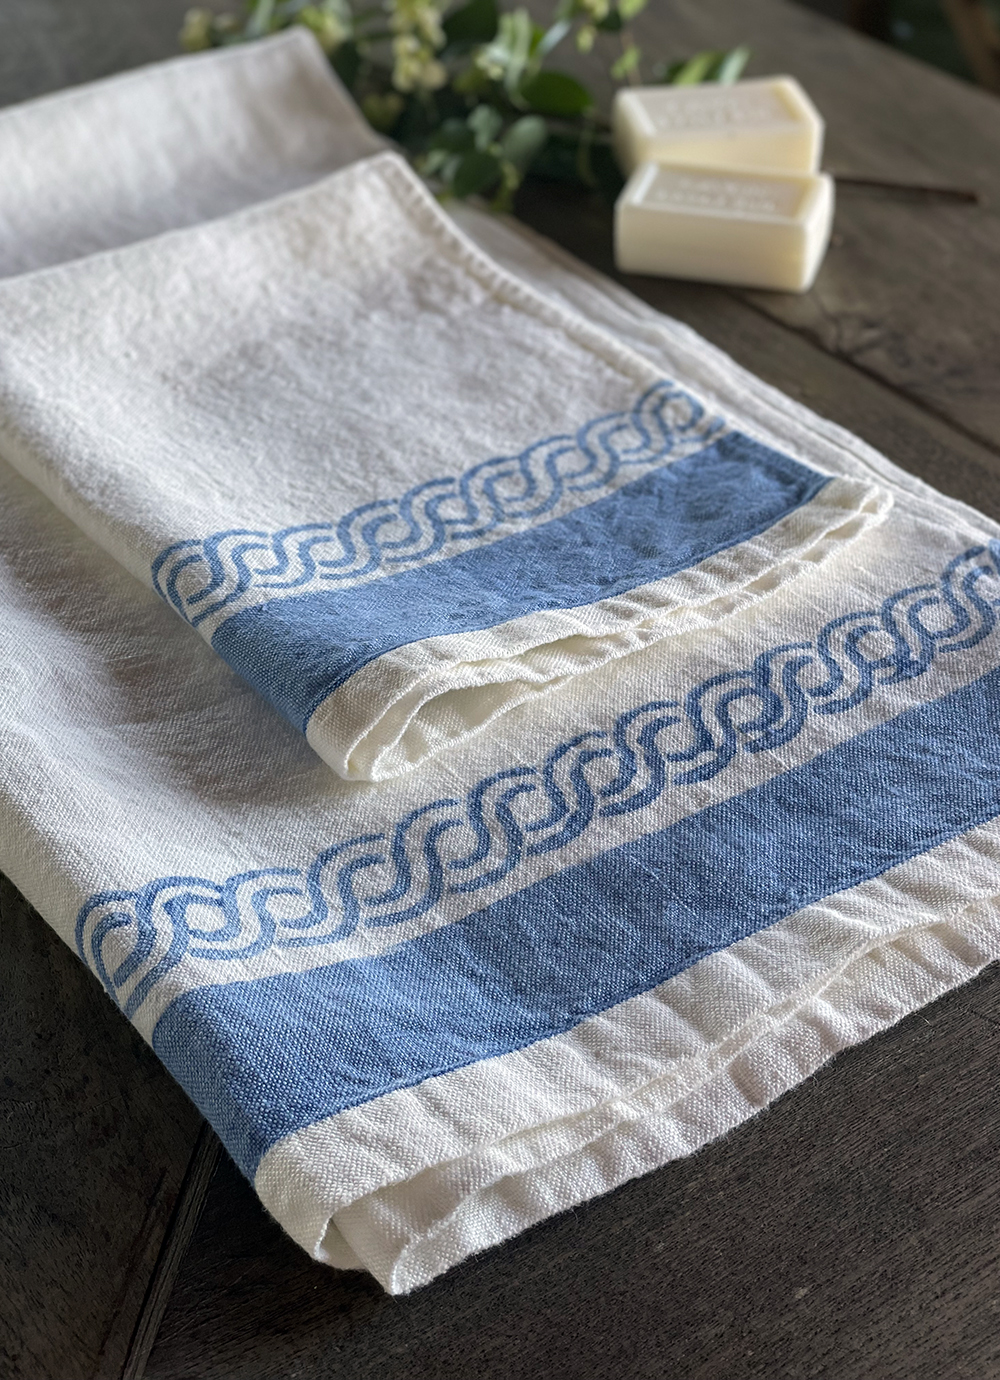 Busatti Zodiaco Linen Cotton Small Italian Hand Towel, Hand